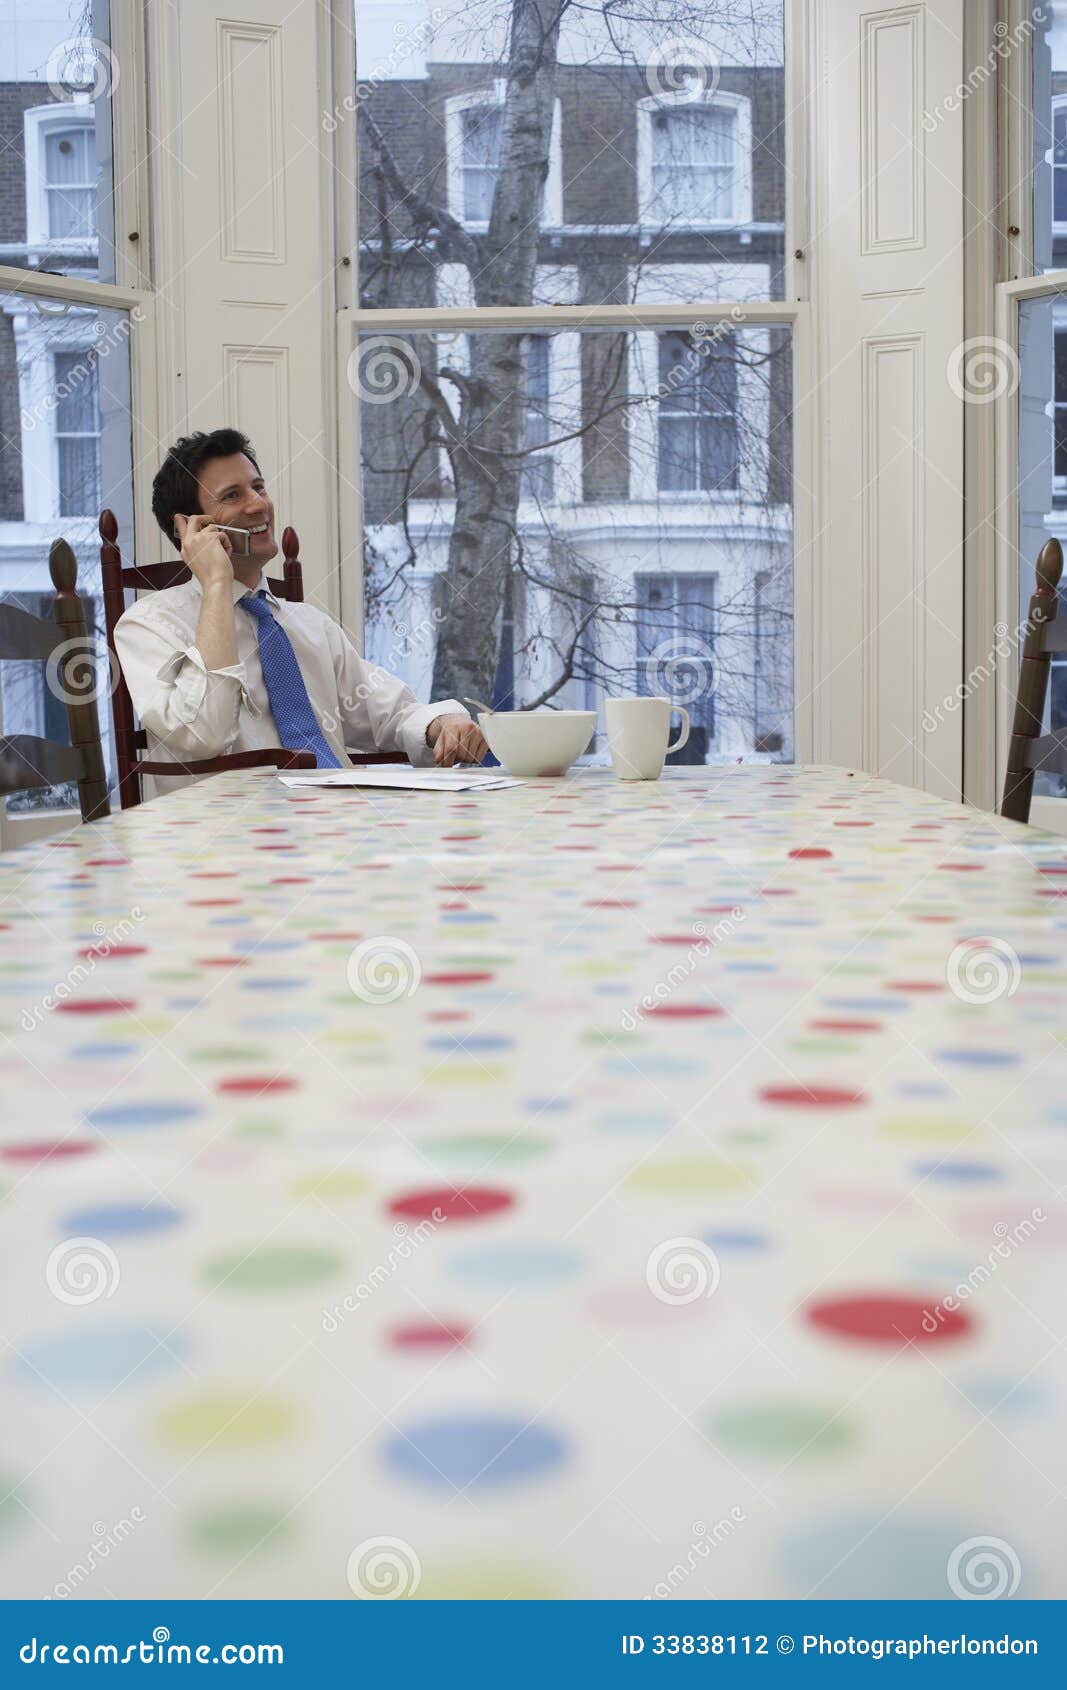 Бизнесмен используя мобильный телефон на обеденном столе. Молодой бизнесмен в formals используя мобильный телефон на обеденном столе